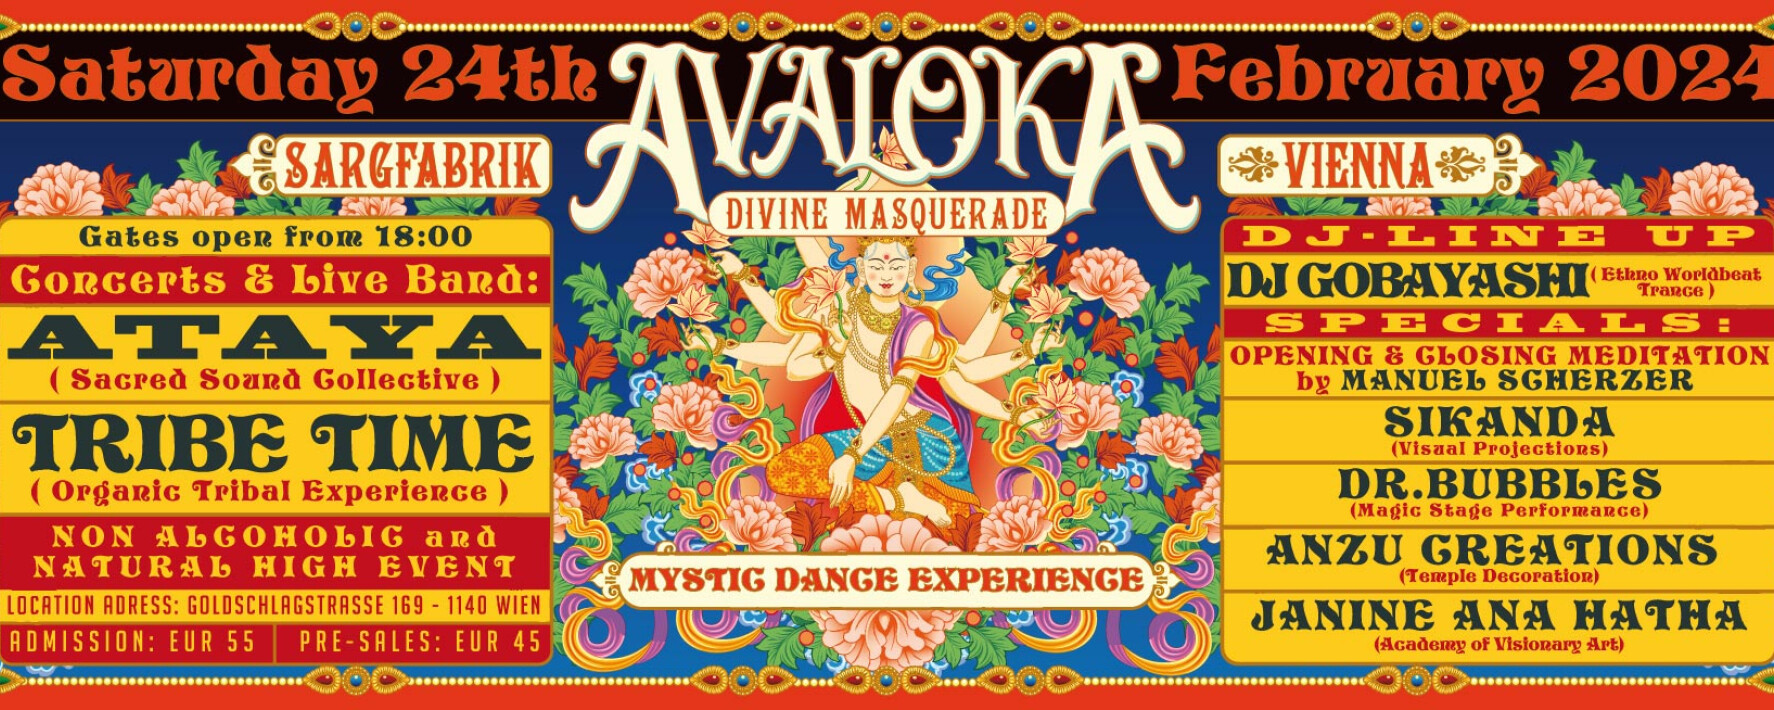 Ankündigung Avaloka